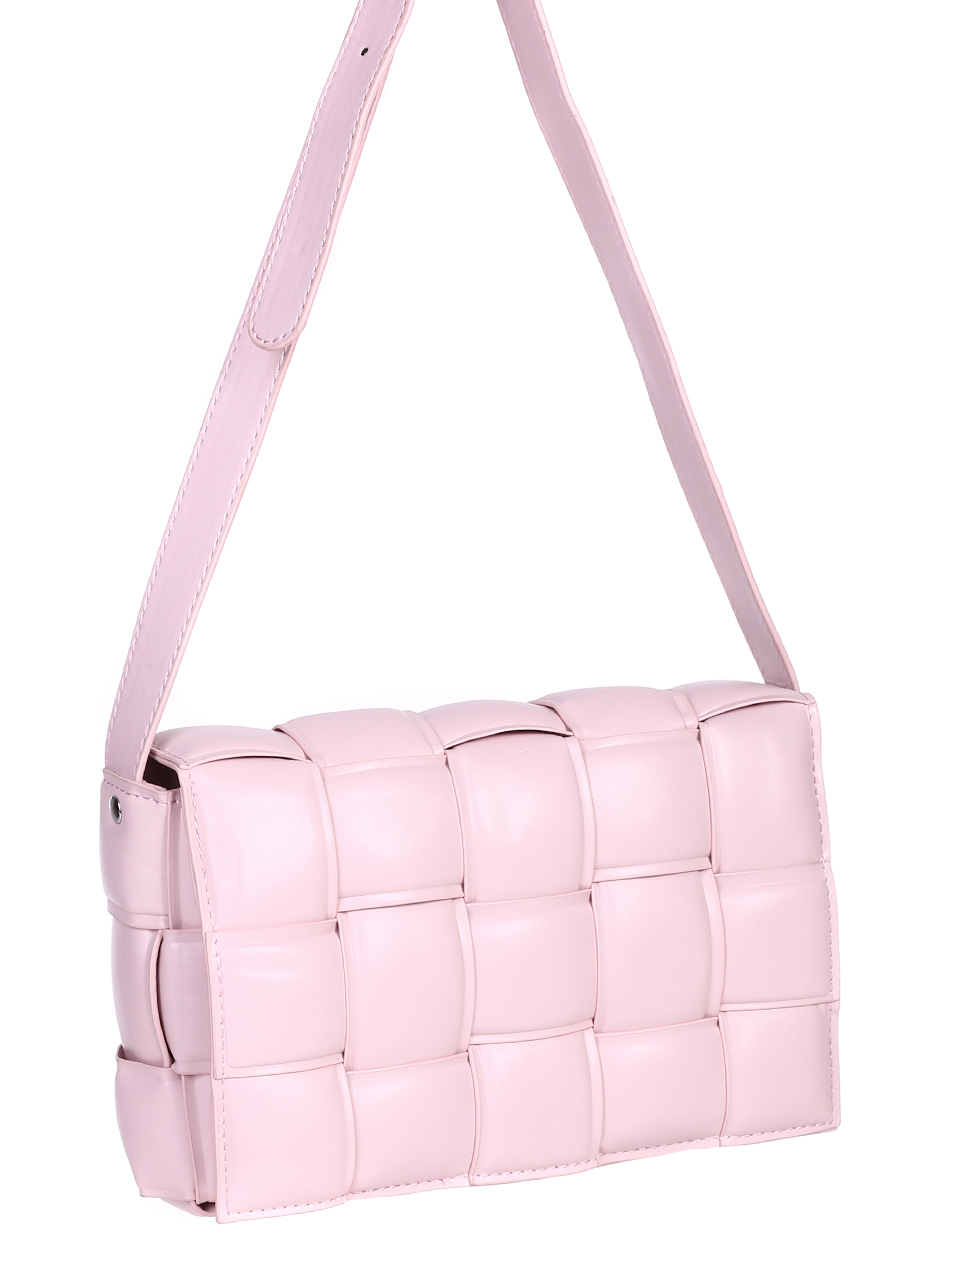 Ежедневна дамска чанта в розово 9Q-22081 pink